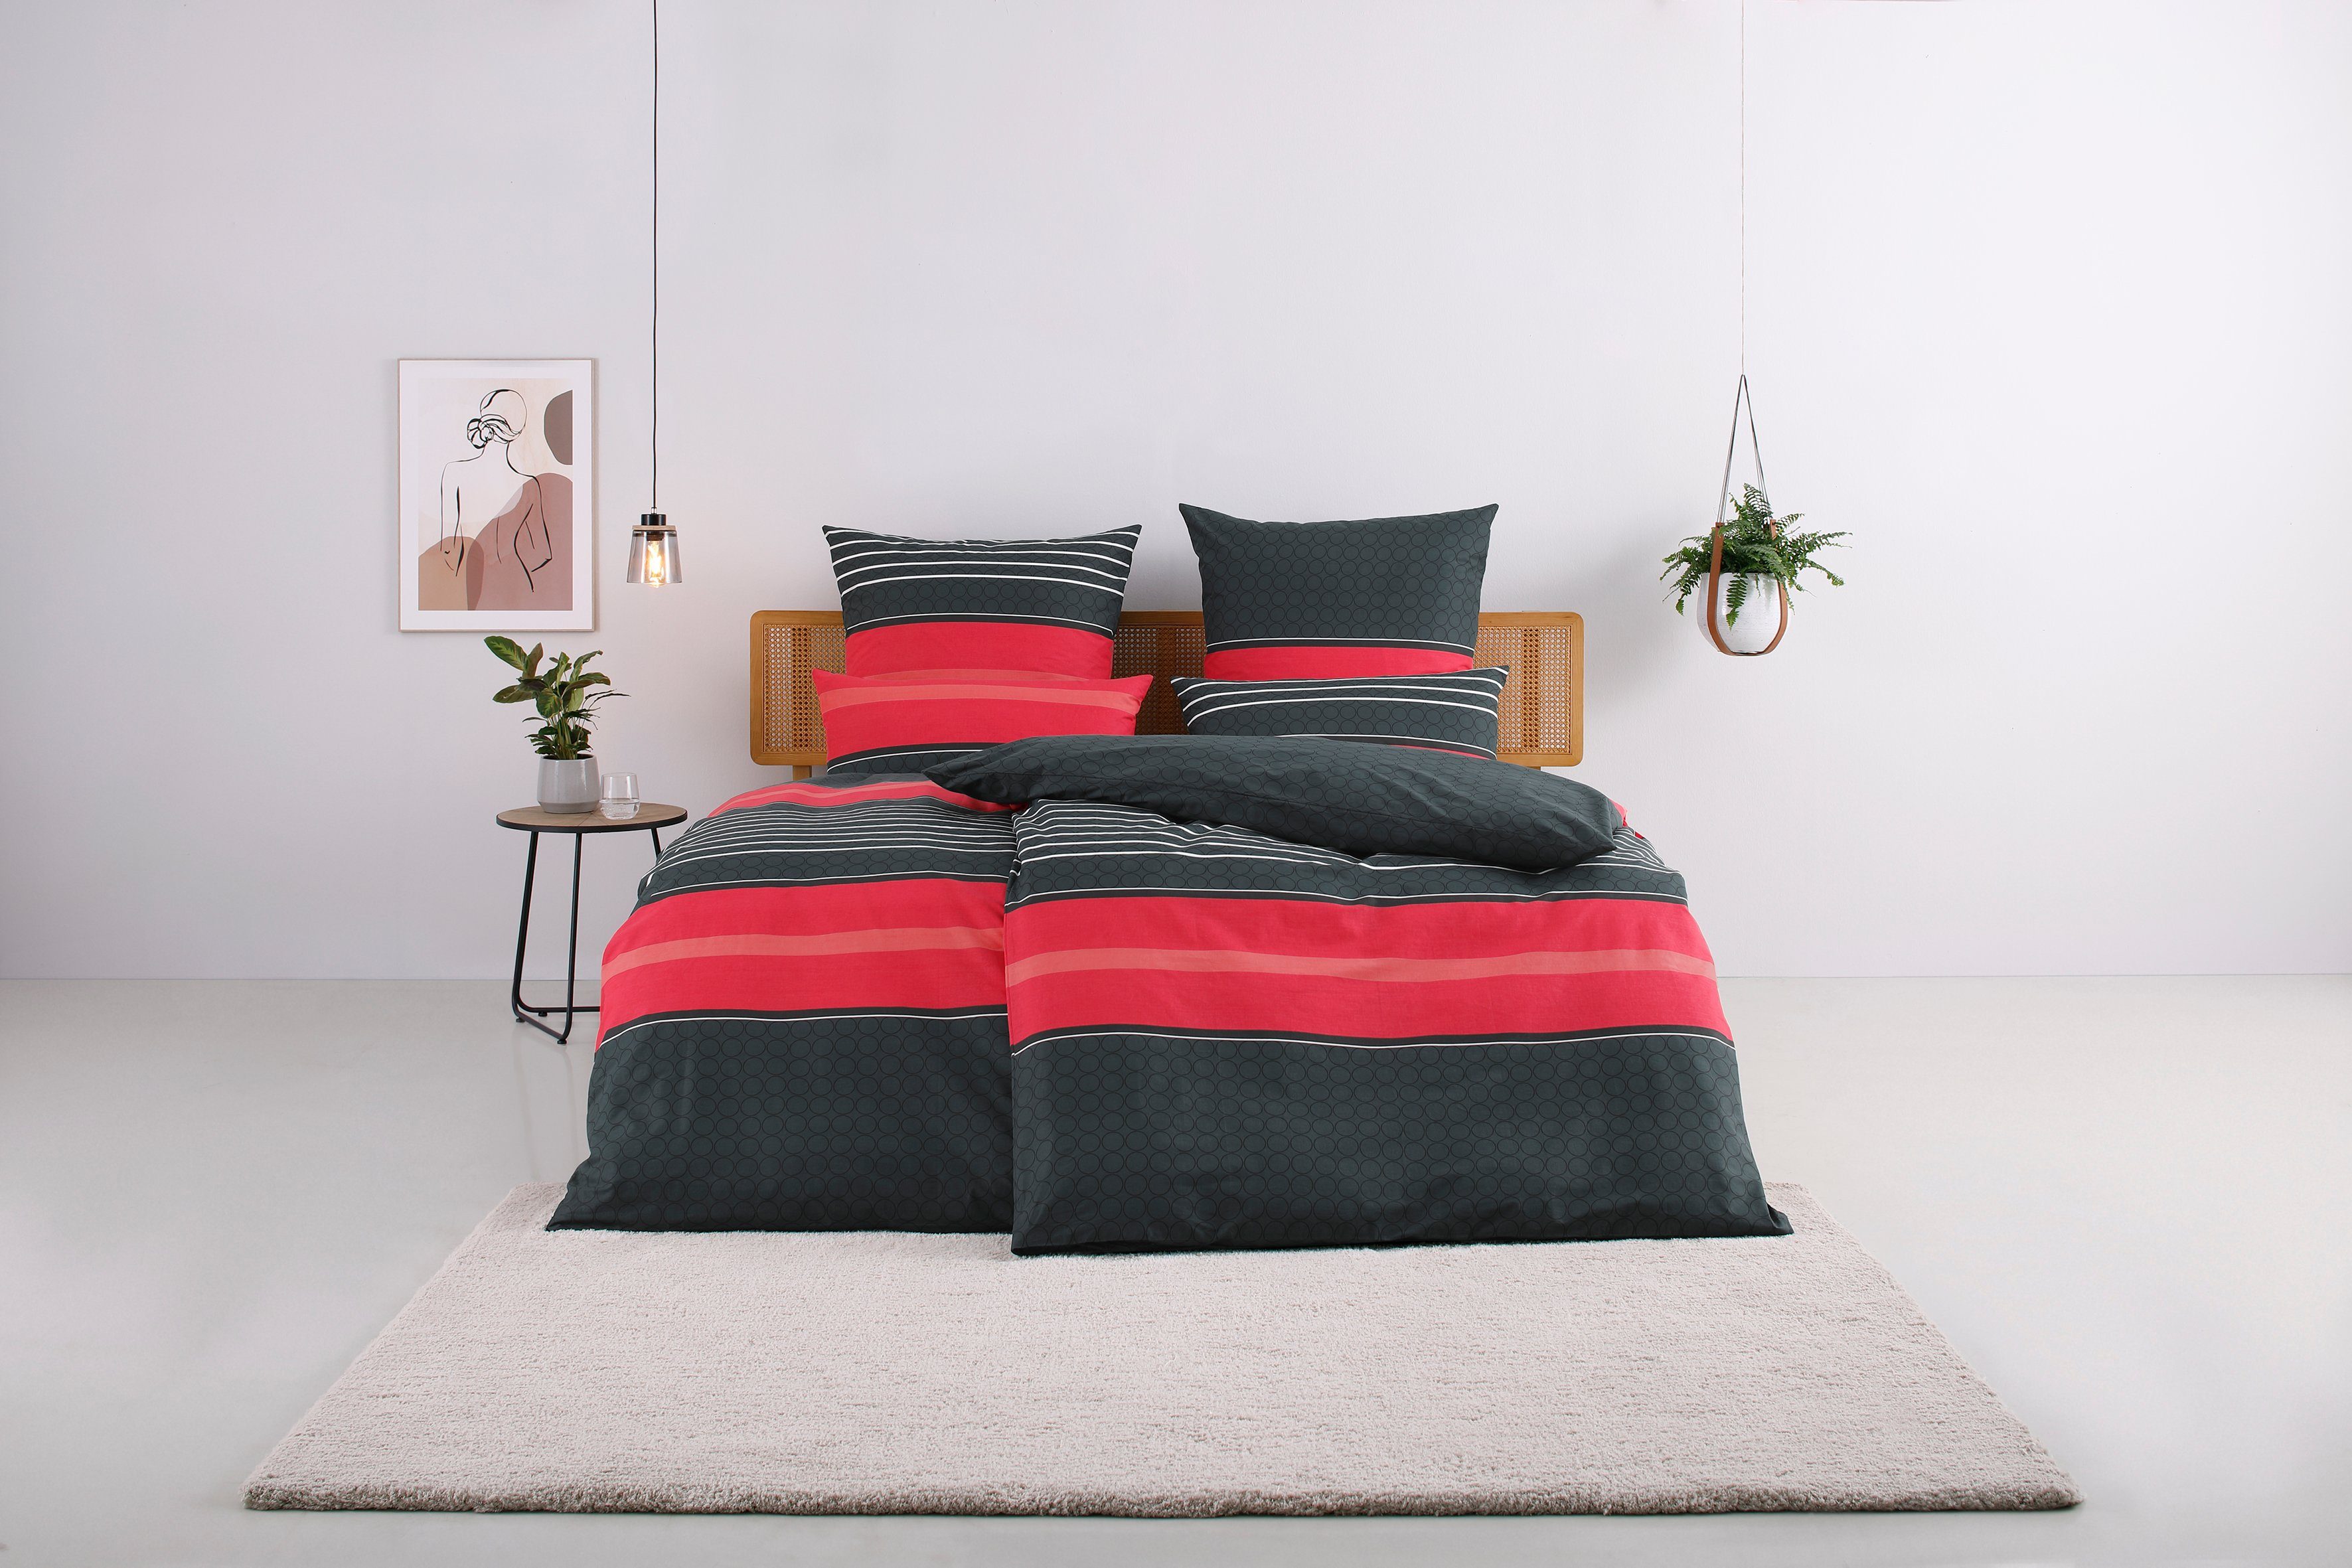 Bettwäsche Circle in Gr. 135x200 oder 155x220 cm, my home, Linon, 2 teilig, Bettwäsche aus Baumwolle mit Streifen-Design, moderne Bettwäsche rot